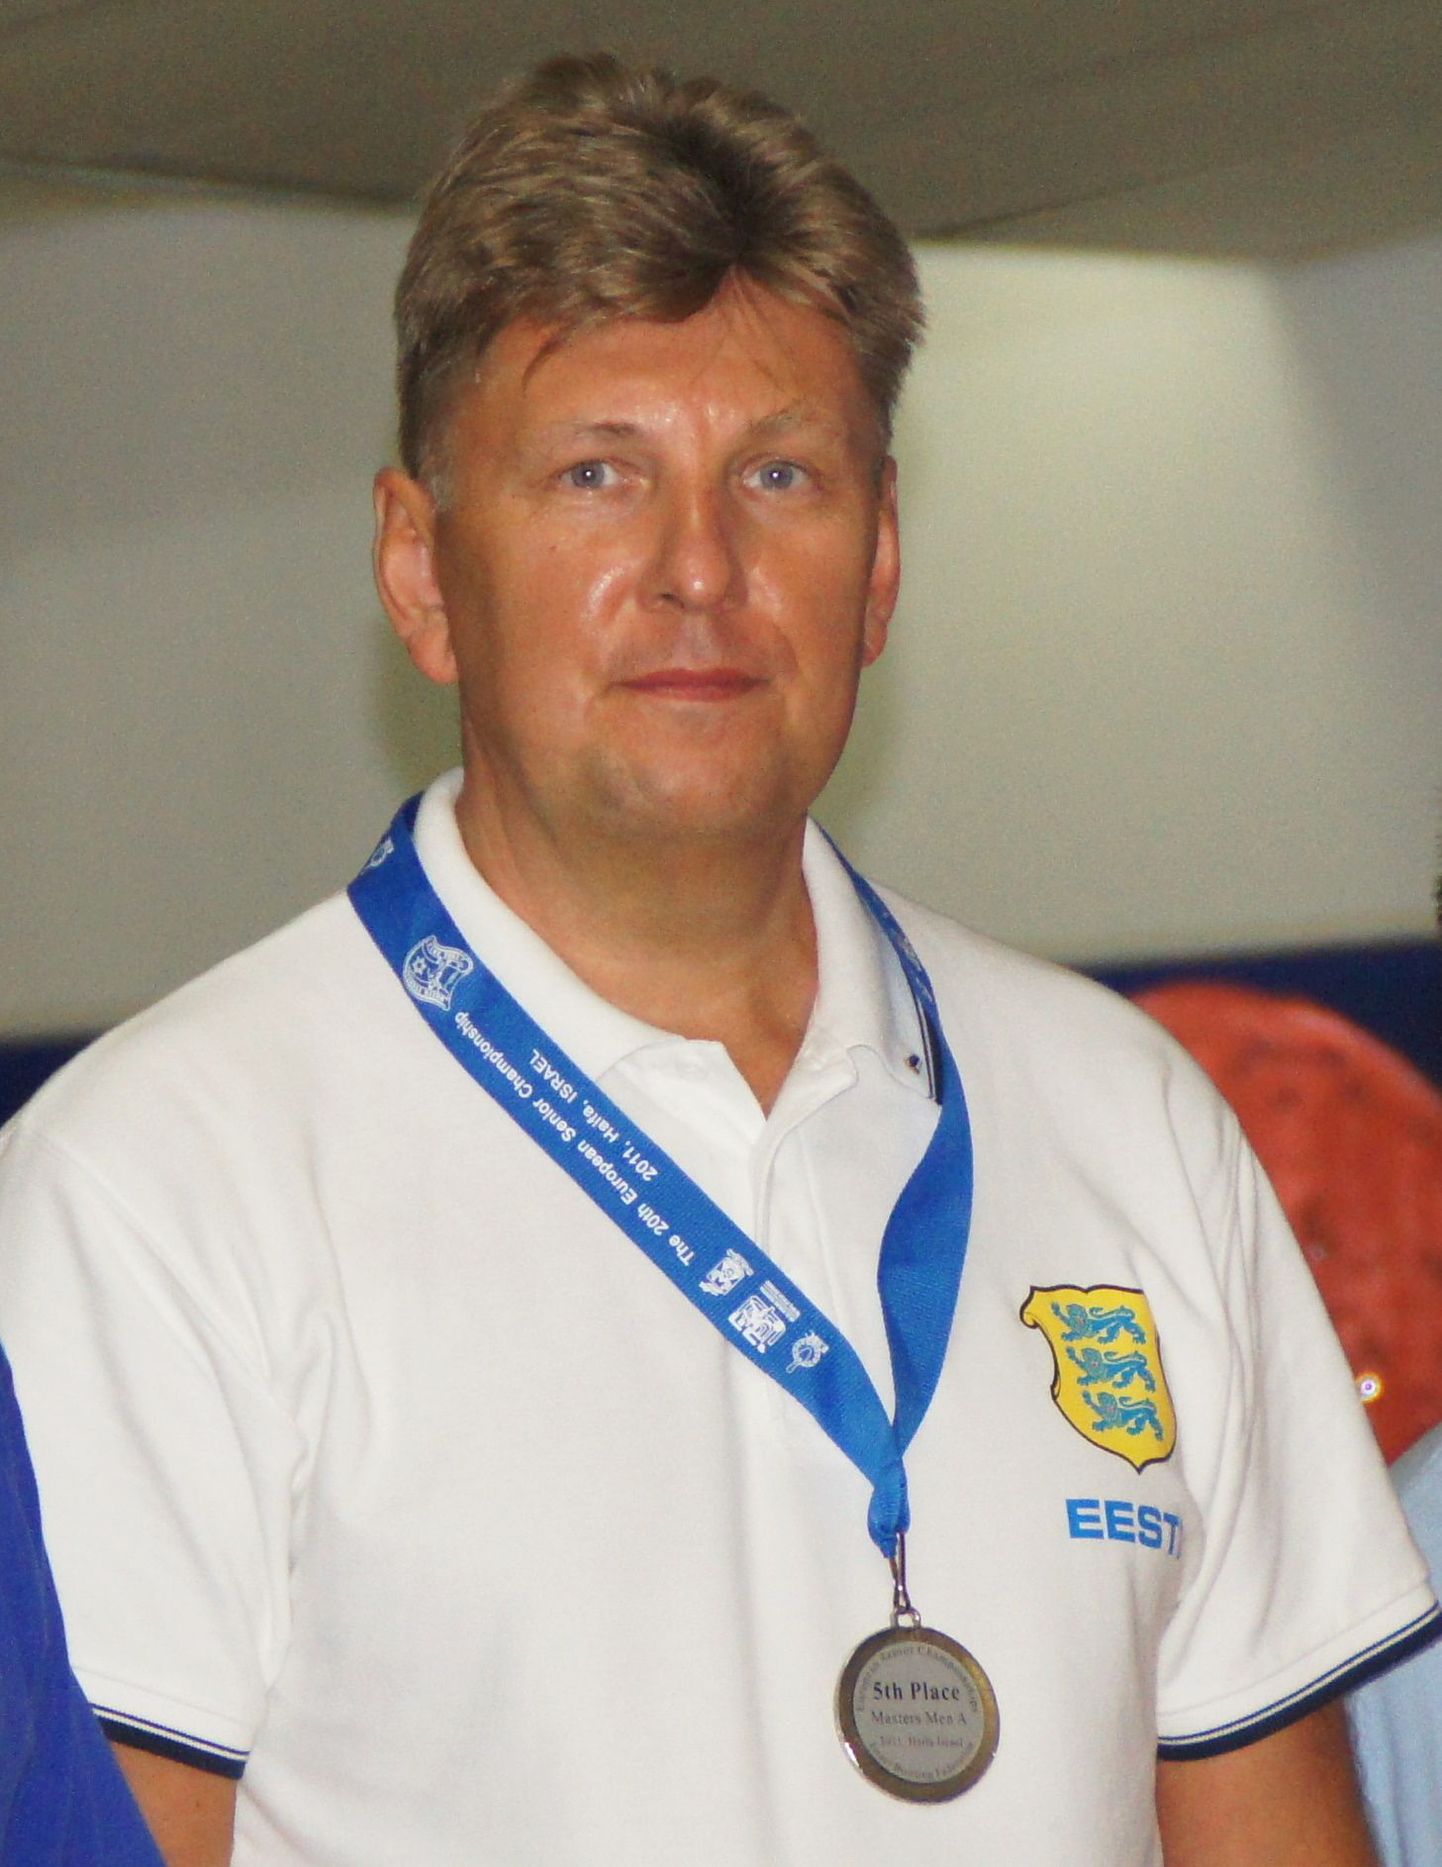 Euroopa Meistrivõistlused bowlingus seenioritele (ESBC 2011) saavutas tartlane Udo Sulp viienda koha.